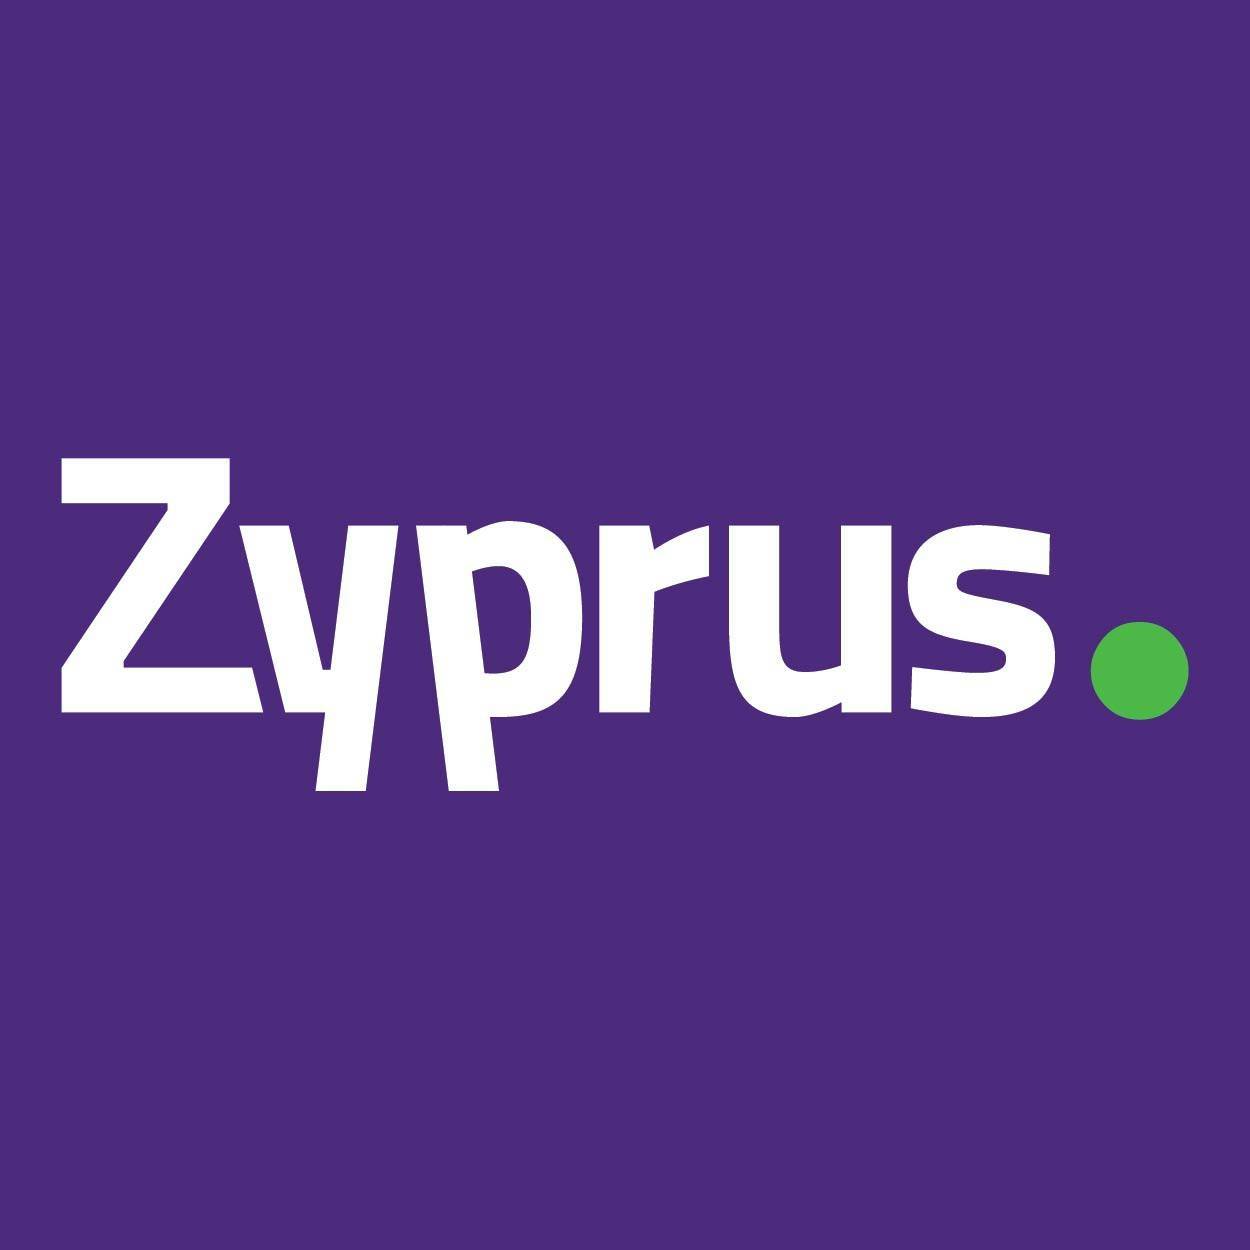 Zyprus Property Group